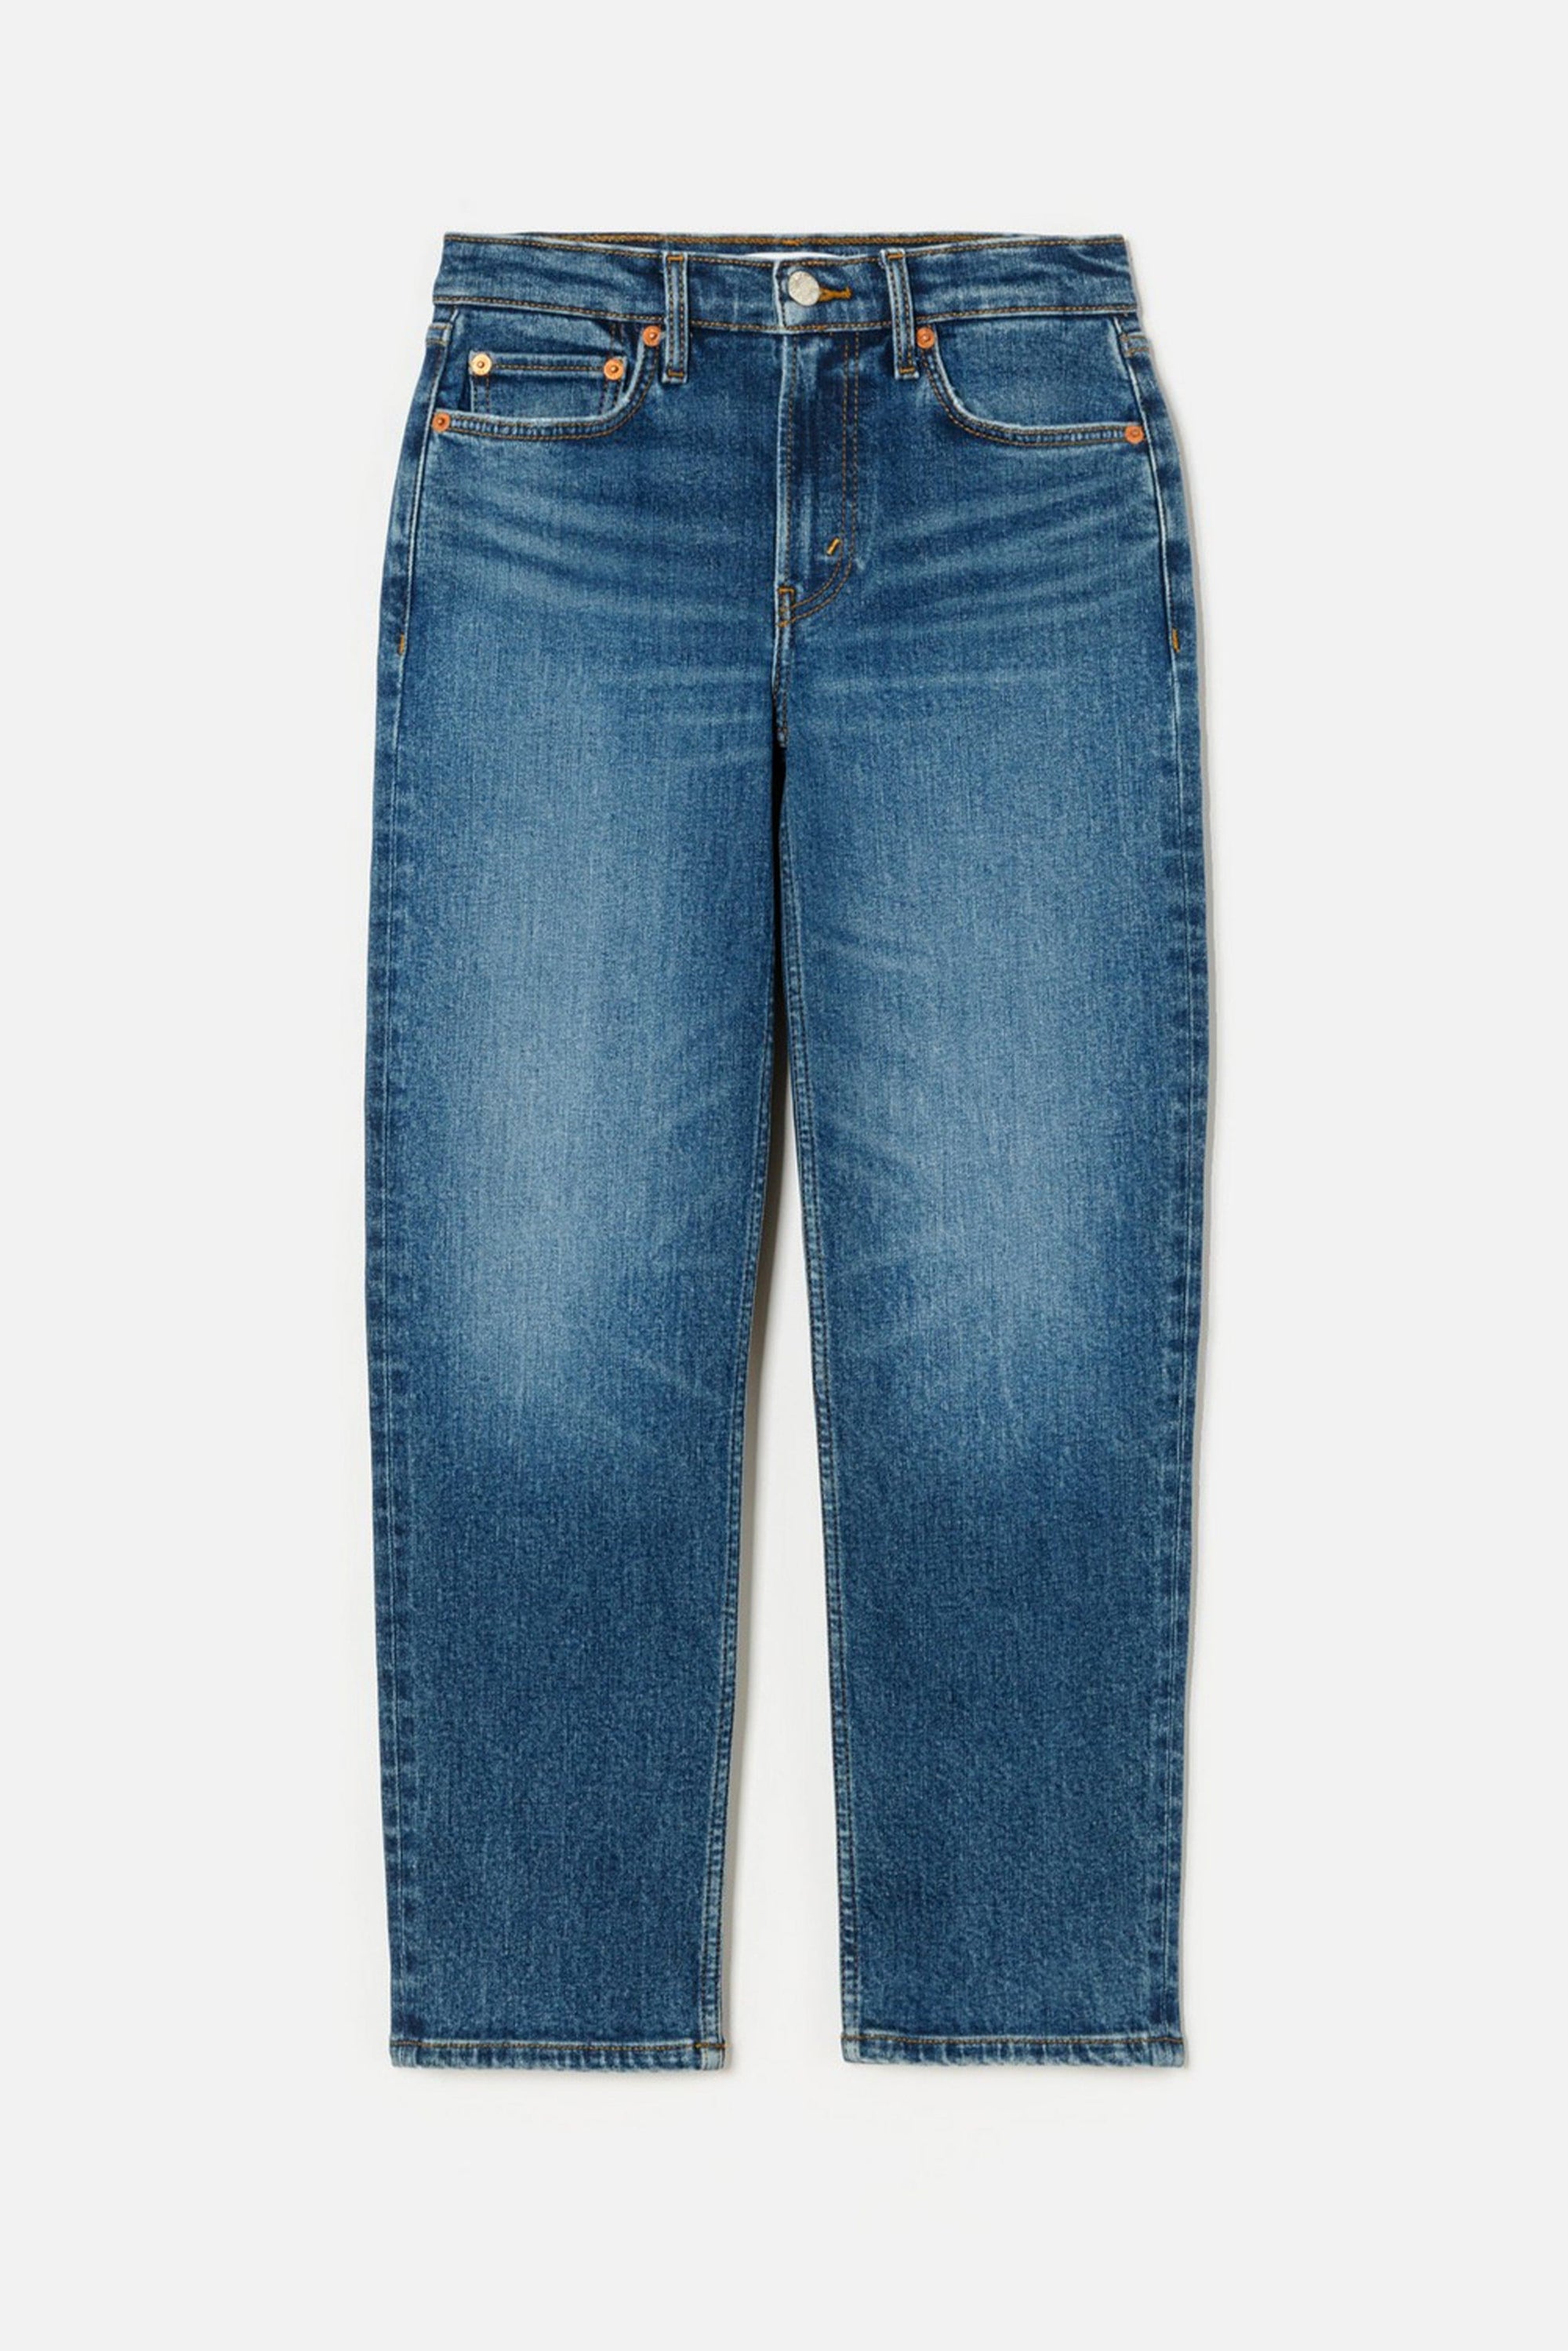 RE/DONE PANTALONE IN DENIM  Jeans da donna Re-Done Medium Skinny Blu scuro